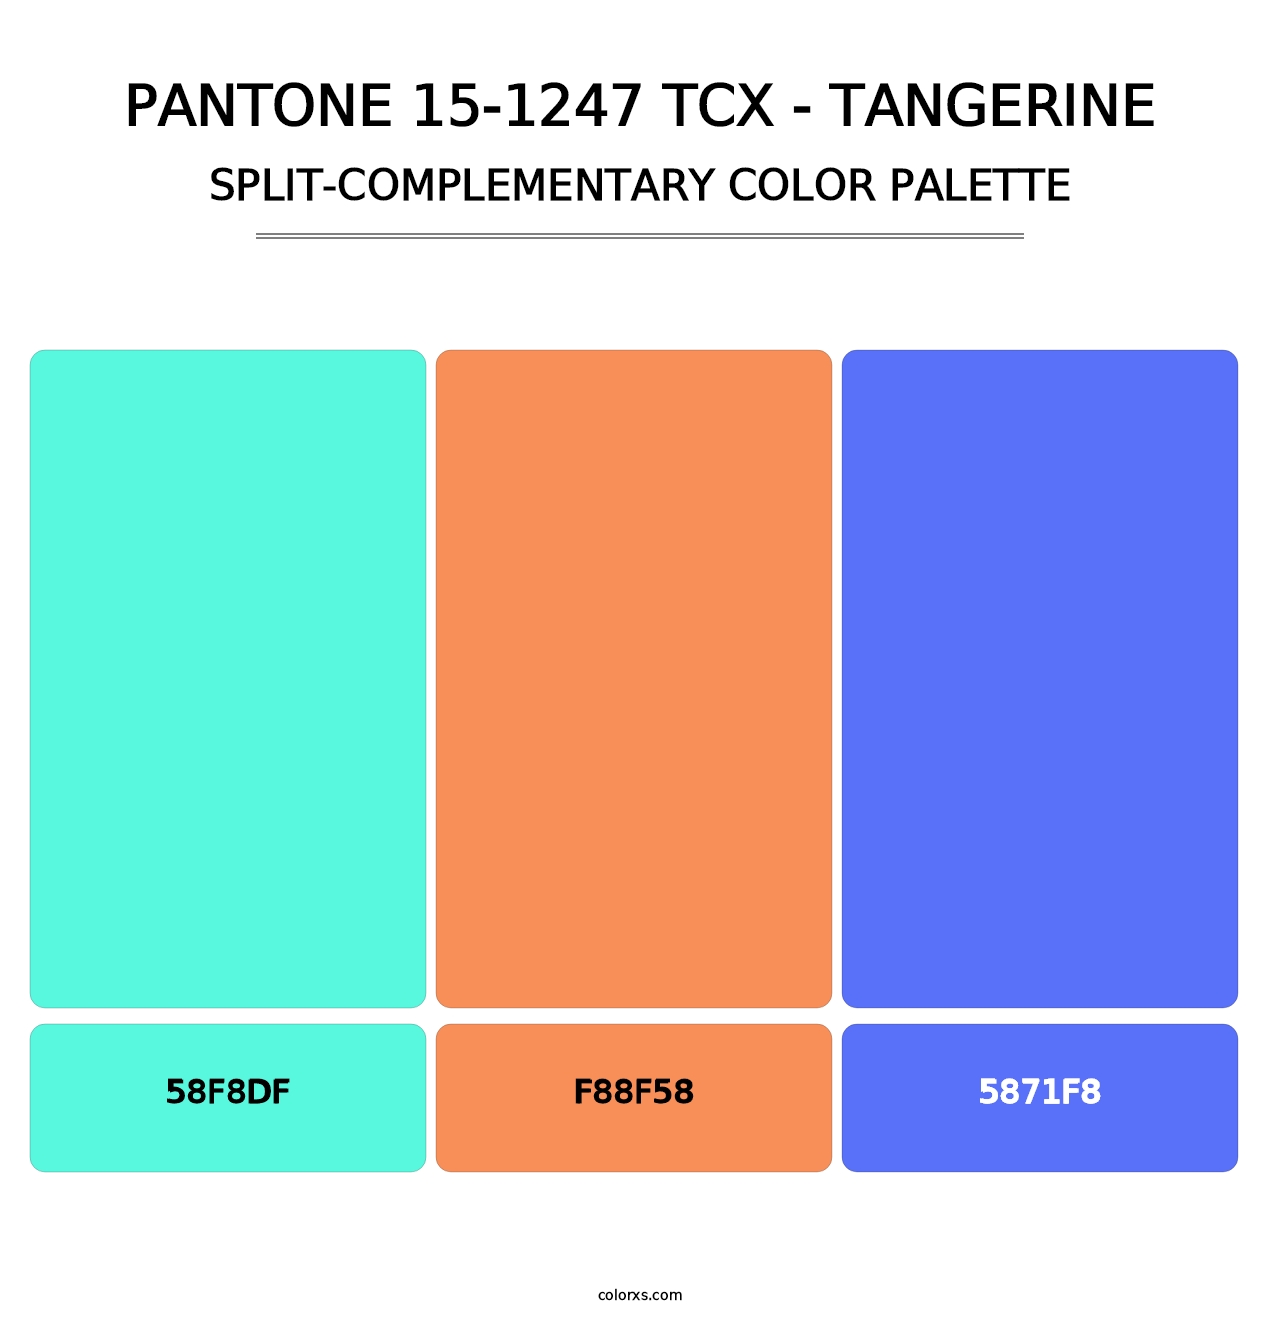 PANTONE 15-1247 TCX - Tangerine - Split-Complementary Color Palette